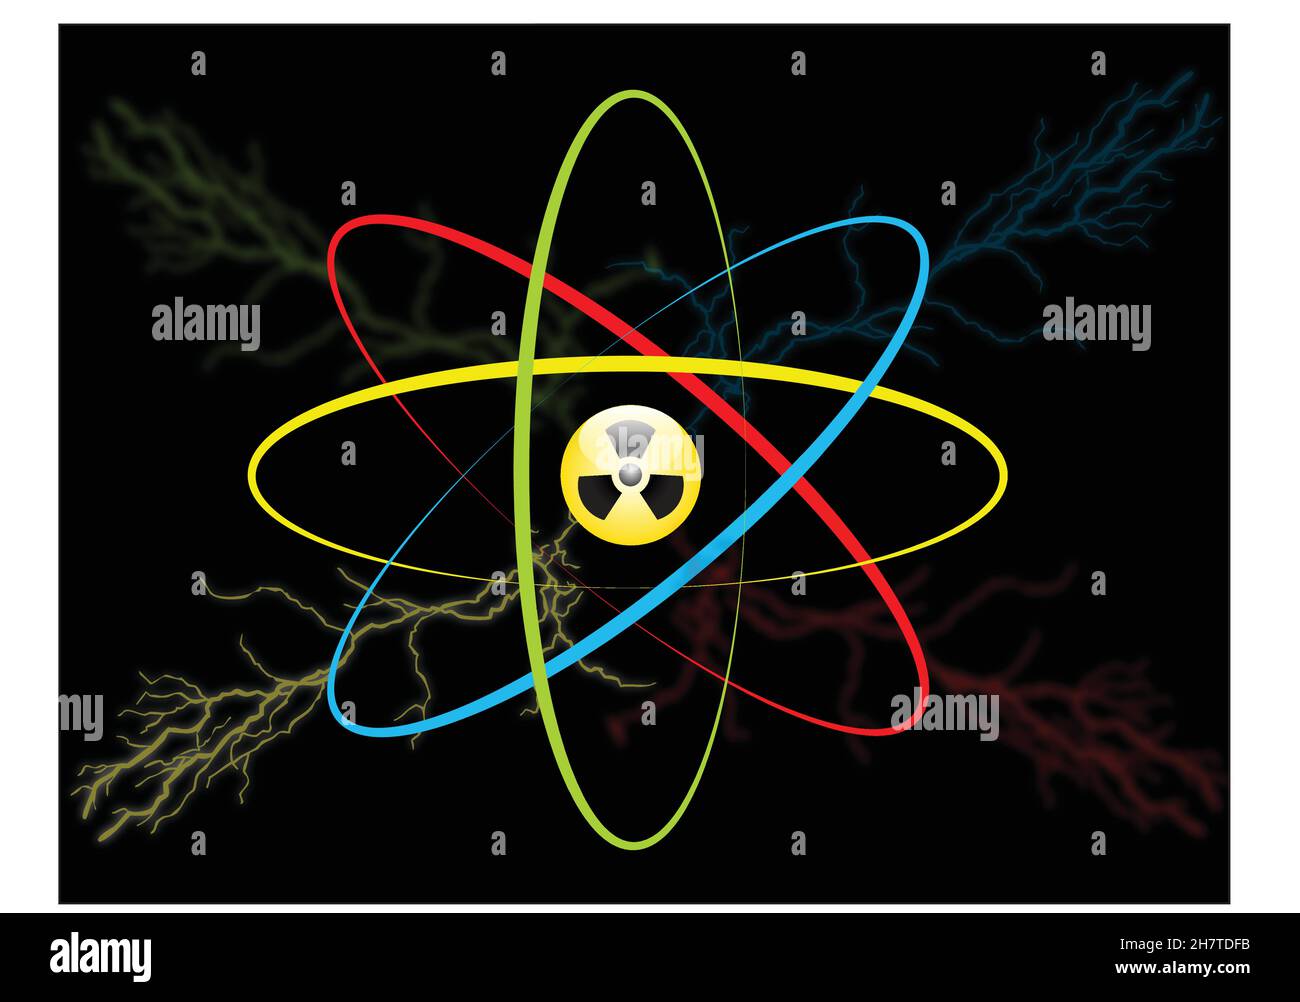 Atom-Symbol. Vektoratom-Symbol mit einem Strahlungszeichen, Blitz und Energieschub isoliert auf schwarzem Hintergrund. Hochspannungskonzept Stock Vektor